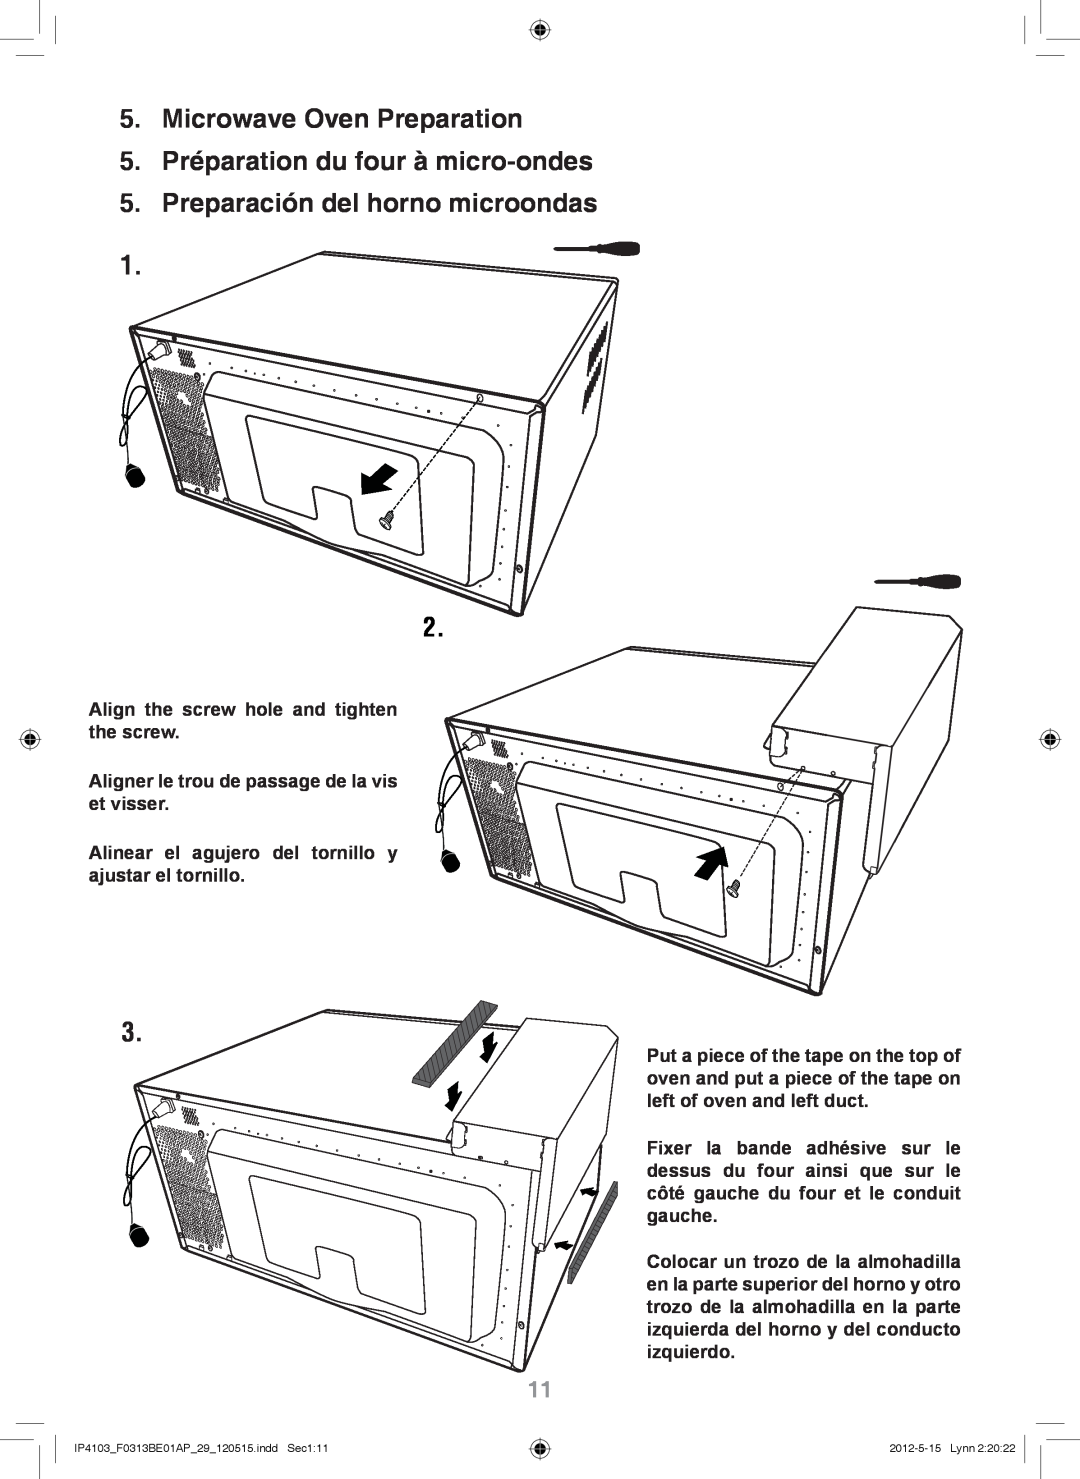 Panasonic NN-TK722S Microwave Oven Preparation, 5.Préparation du four à micro-ondes, Preparación del horno microondas 